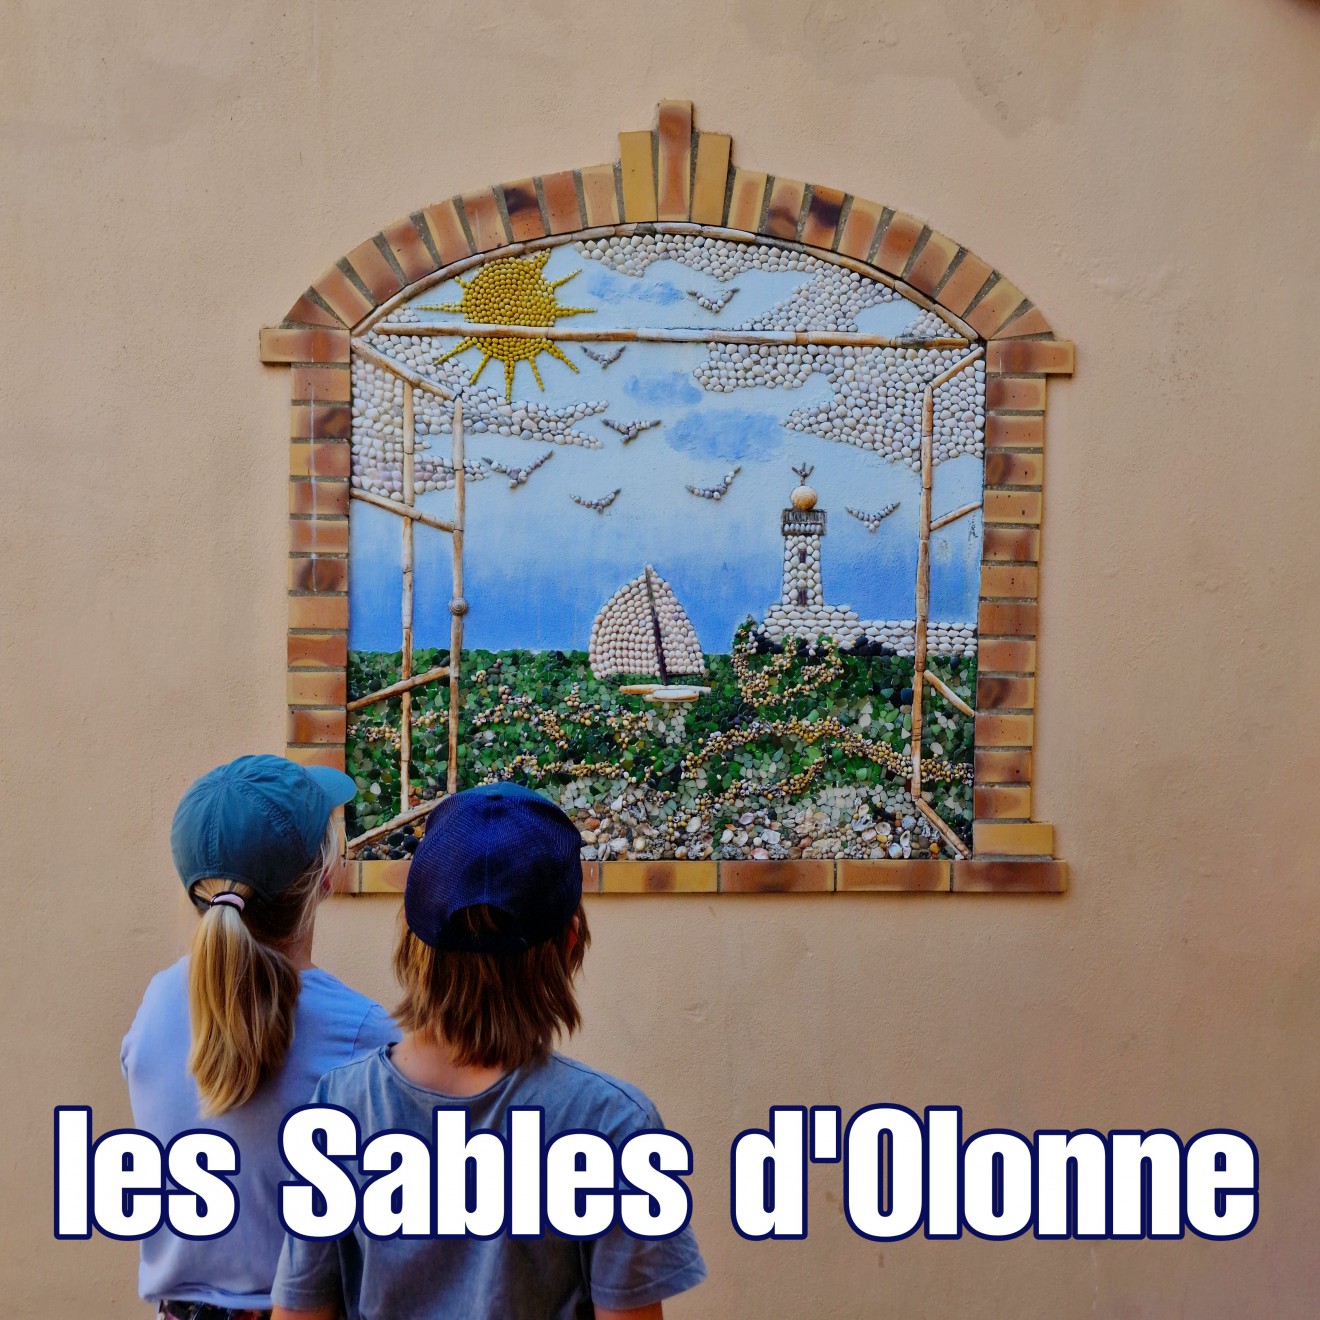 Les Sables d'Olonne: 6 tips met kinderen. Ben je in de Vendée aan de westkust van Frankrijk? Ga dan zeker naar les Sables d'Olonne. Een leuke stad aan zee, met een heel bijzonder buiten museum.